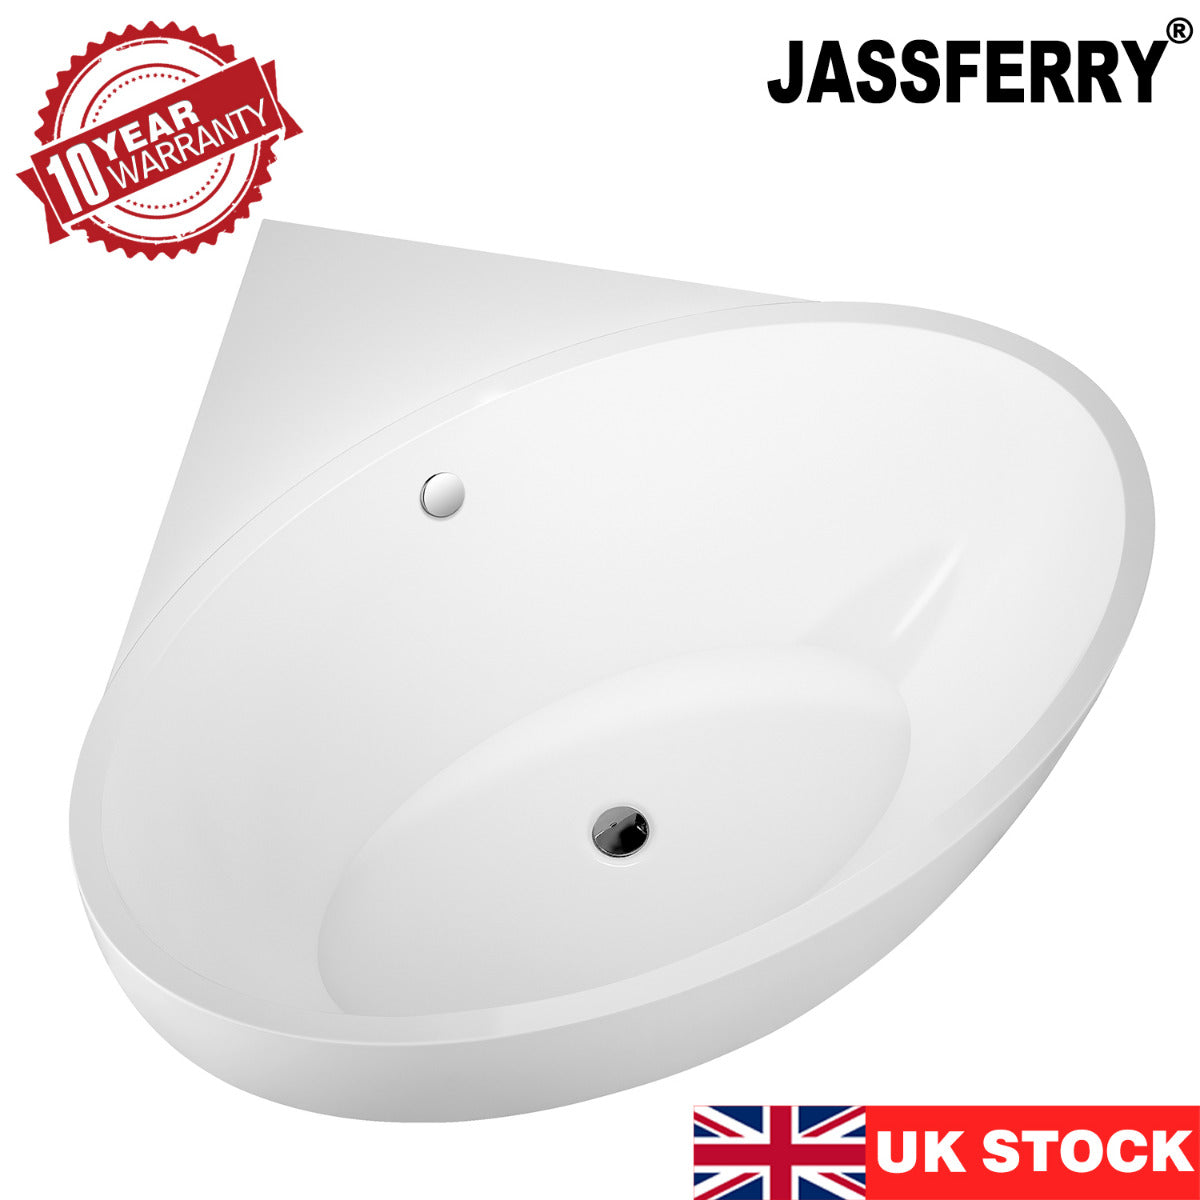 JassferryJASSFERRY 1510 mm Vintage Design Freestanding Bathtub Luxury Stand Alone Corner Baths SPABathtubs